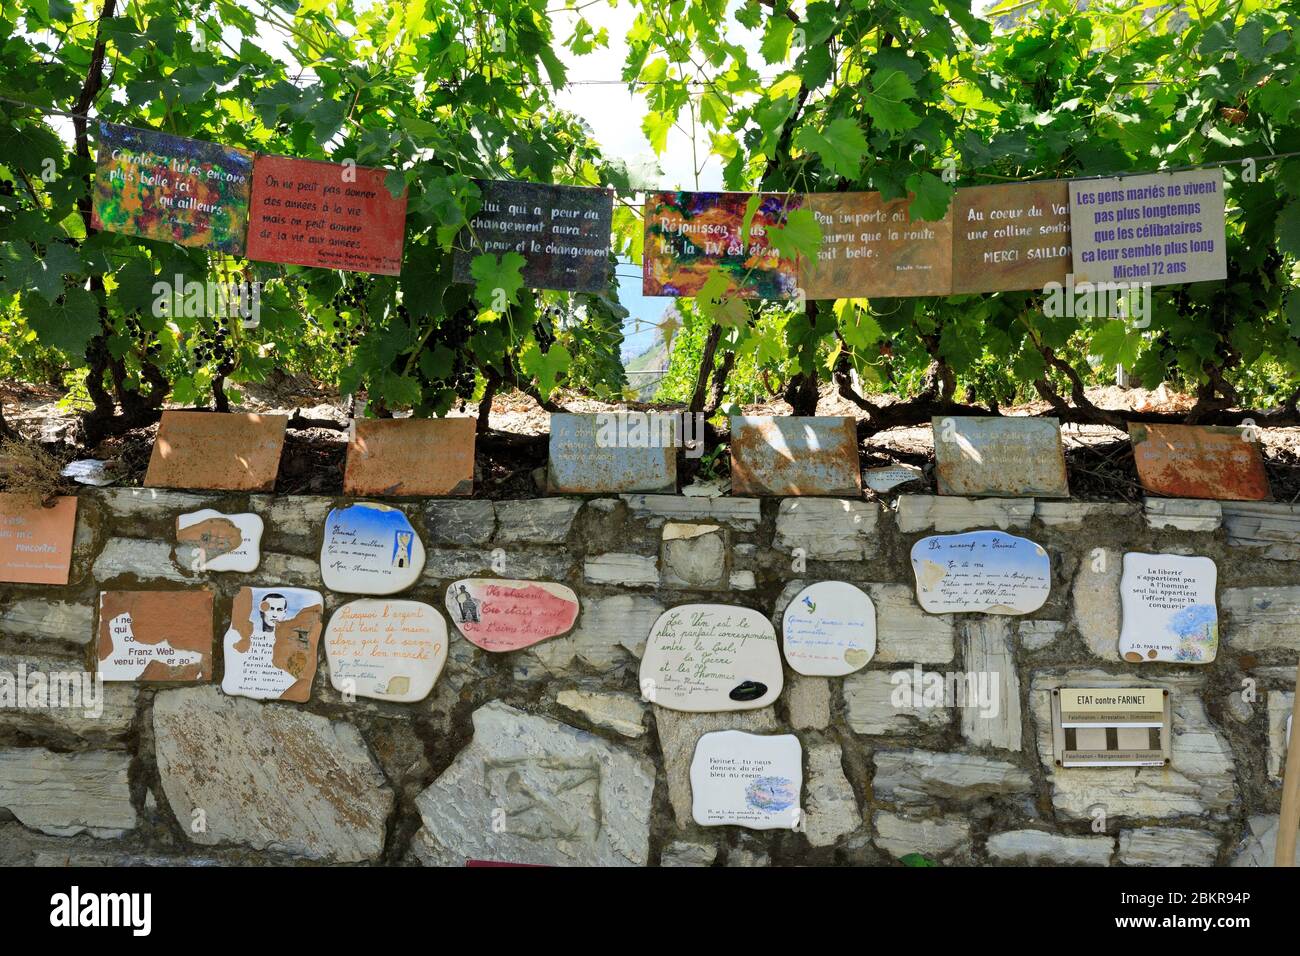 Suisse, canton du Valais, Saillon, promenade spirituelle menant au vignoble de Farinet Banque D'Images